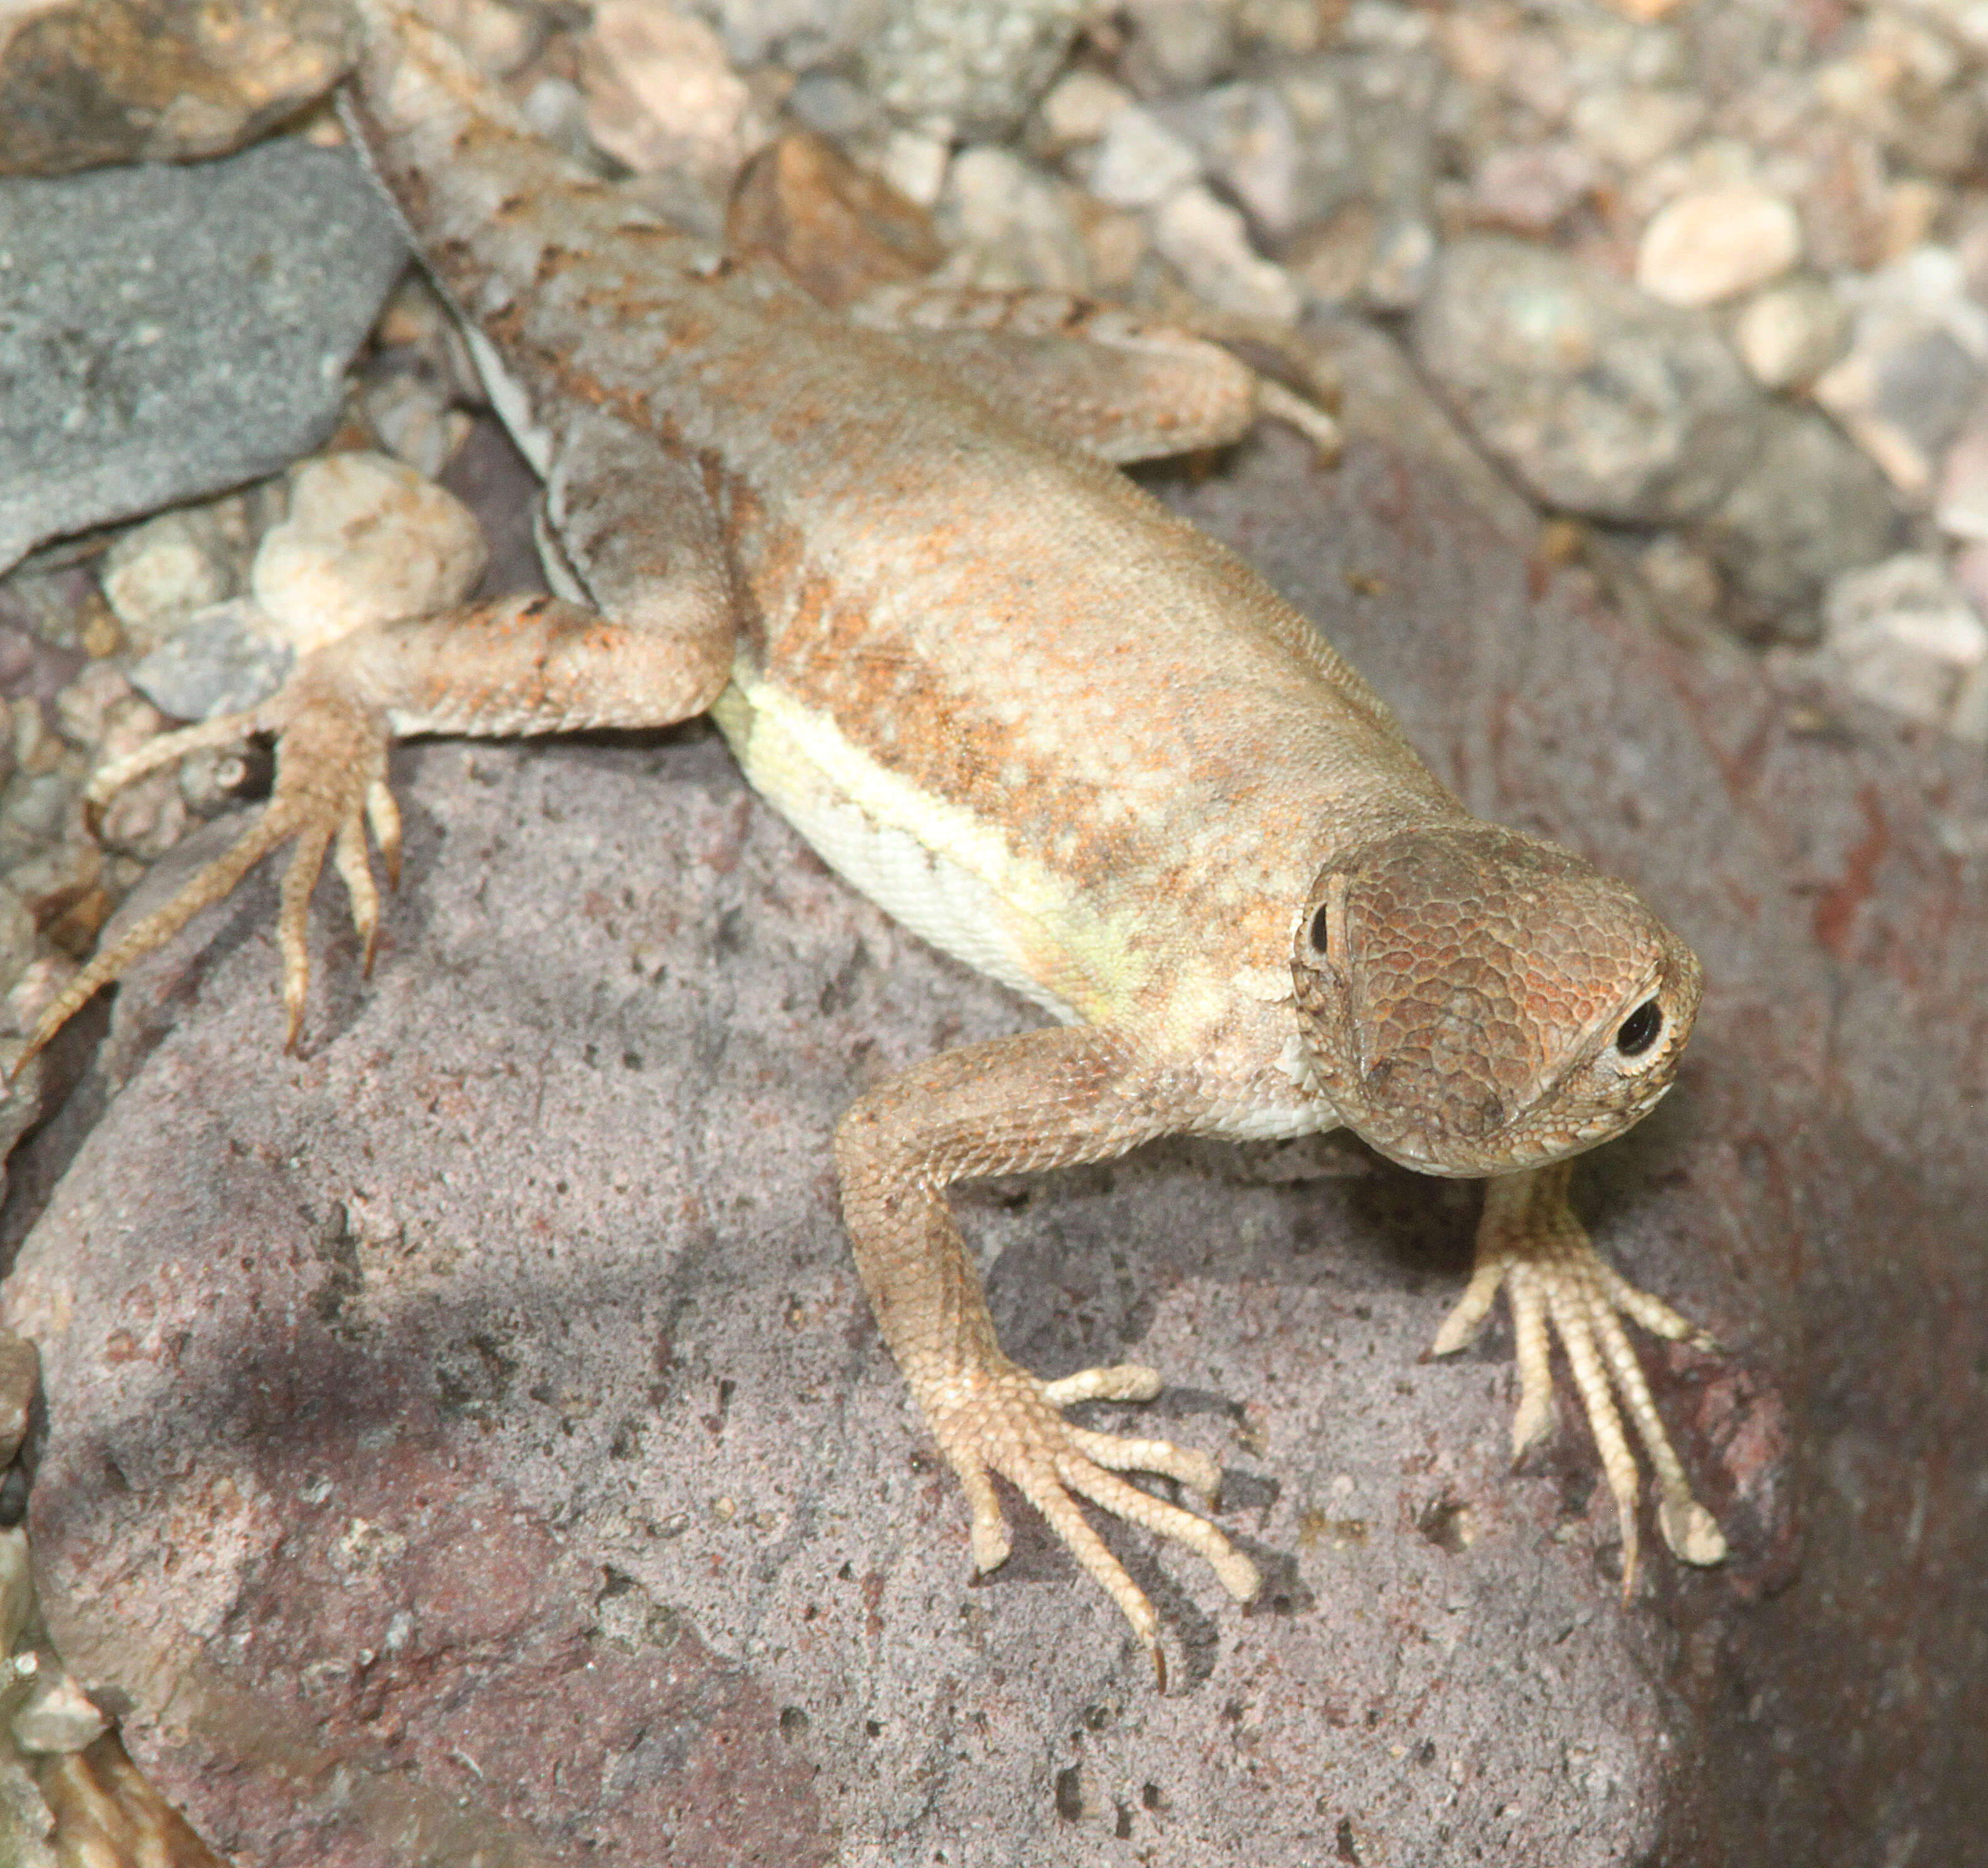 Image of Elegant Earless Lizard